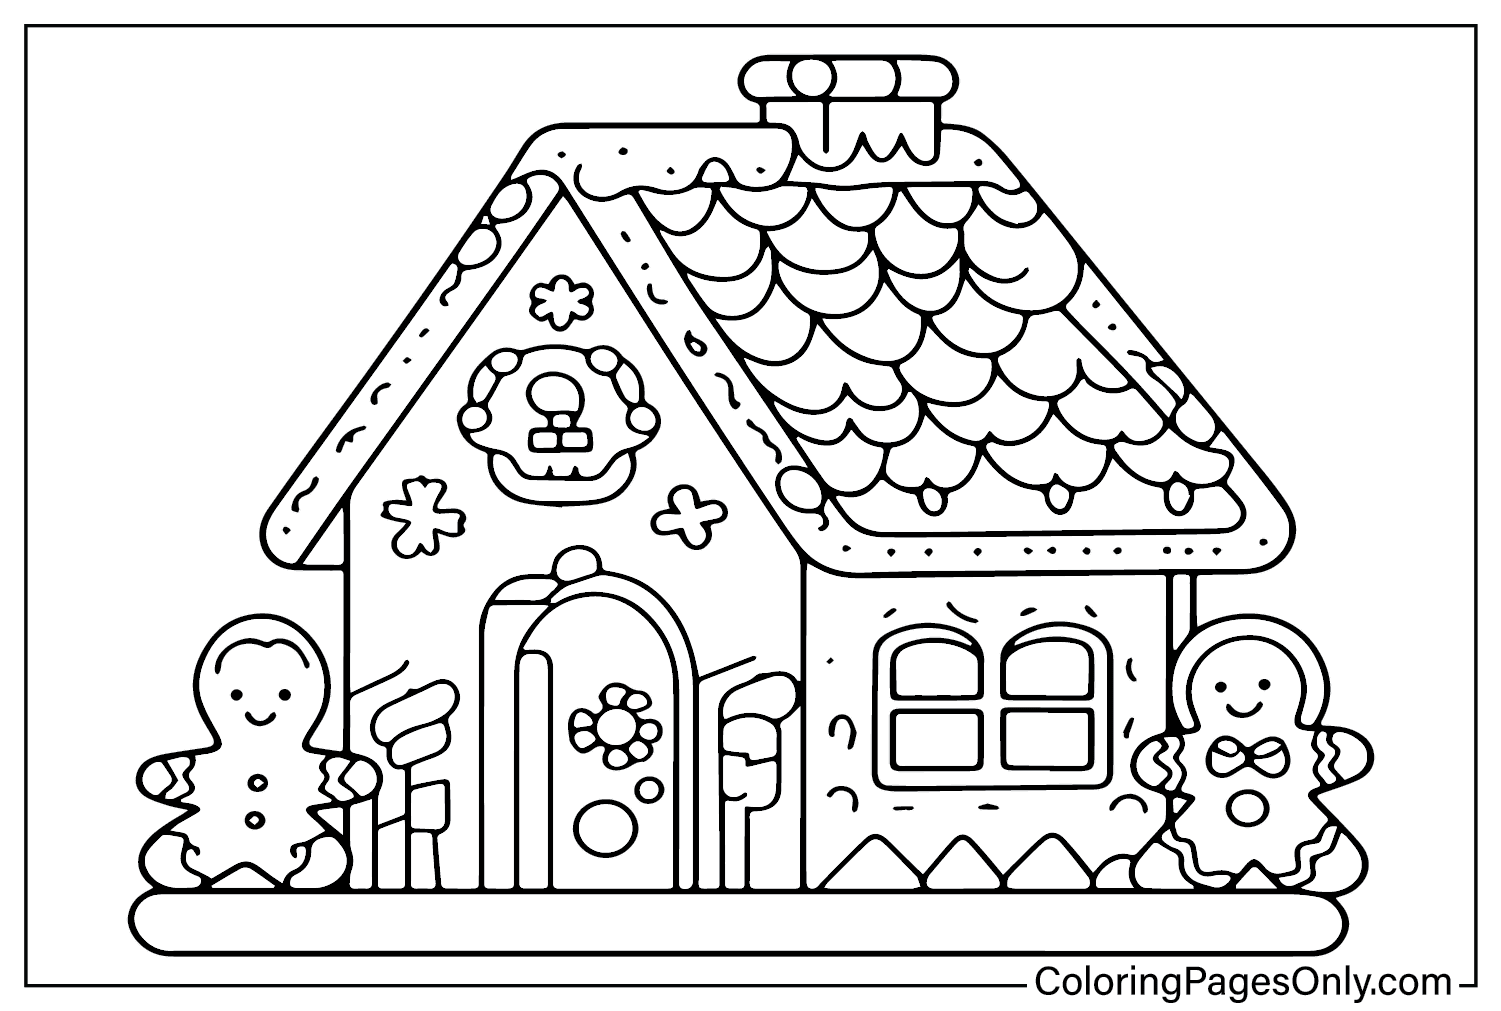 Раскраска Пряничный домик для взрослых от Пряничный домик